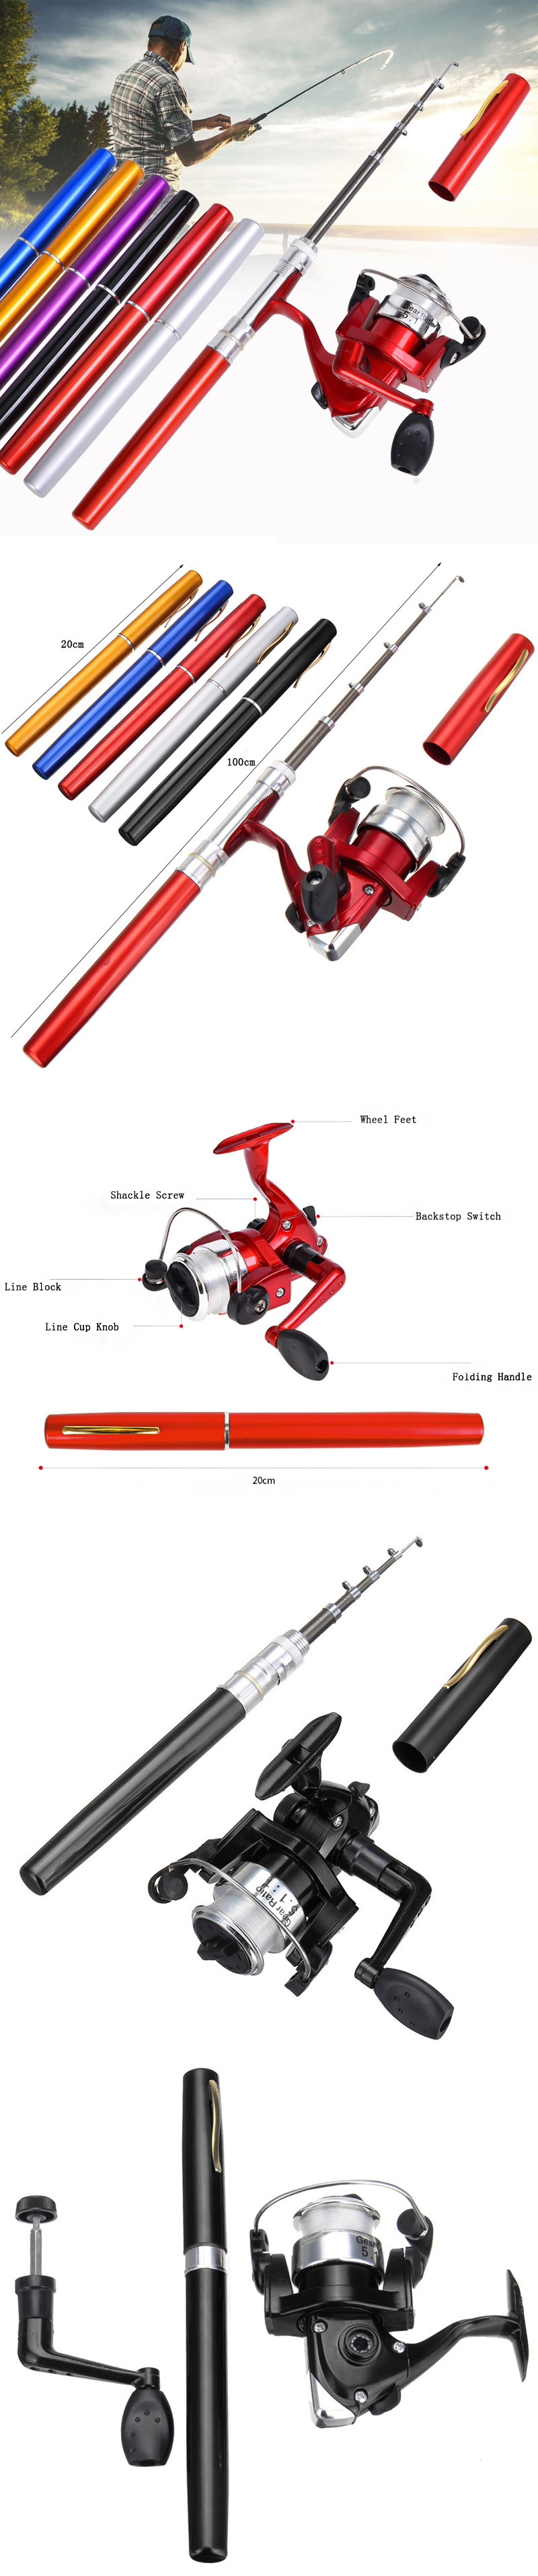 LEO-Mini-Fishing-Rod-Reel-Combo-Fibre-Glass-Aluminum-Fishing-Reel-511-Portable-Hunting-Fishing-Tools-1422520